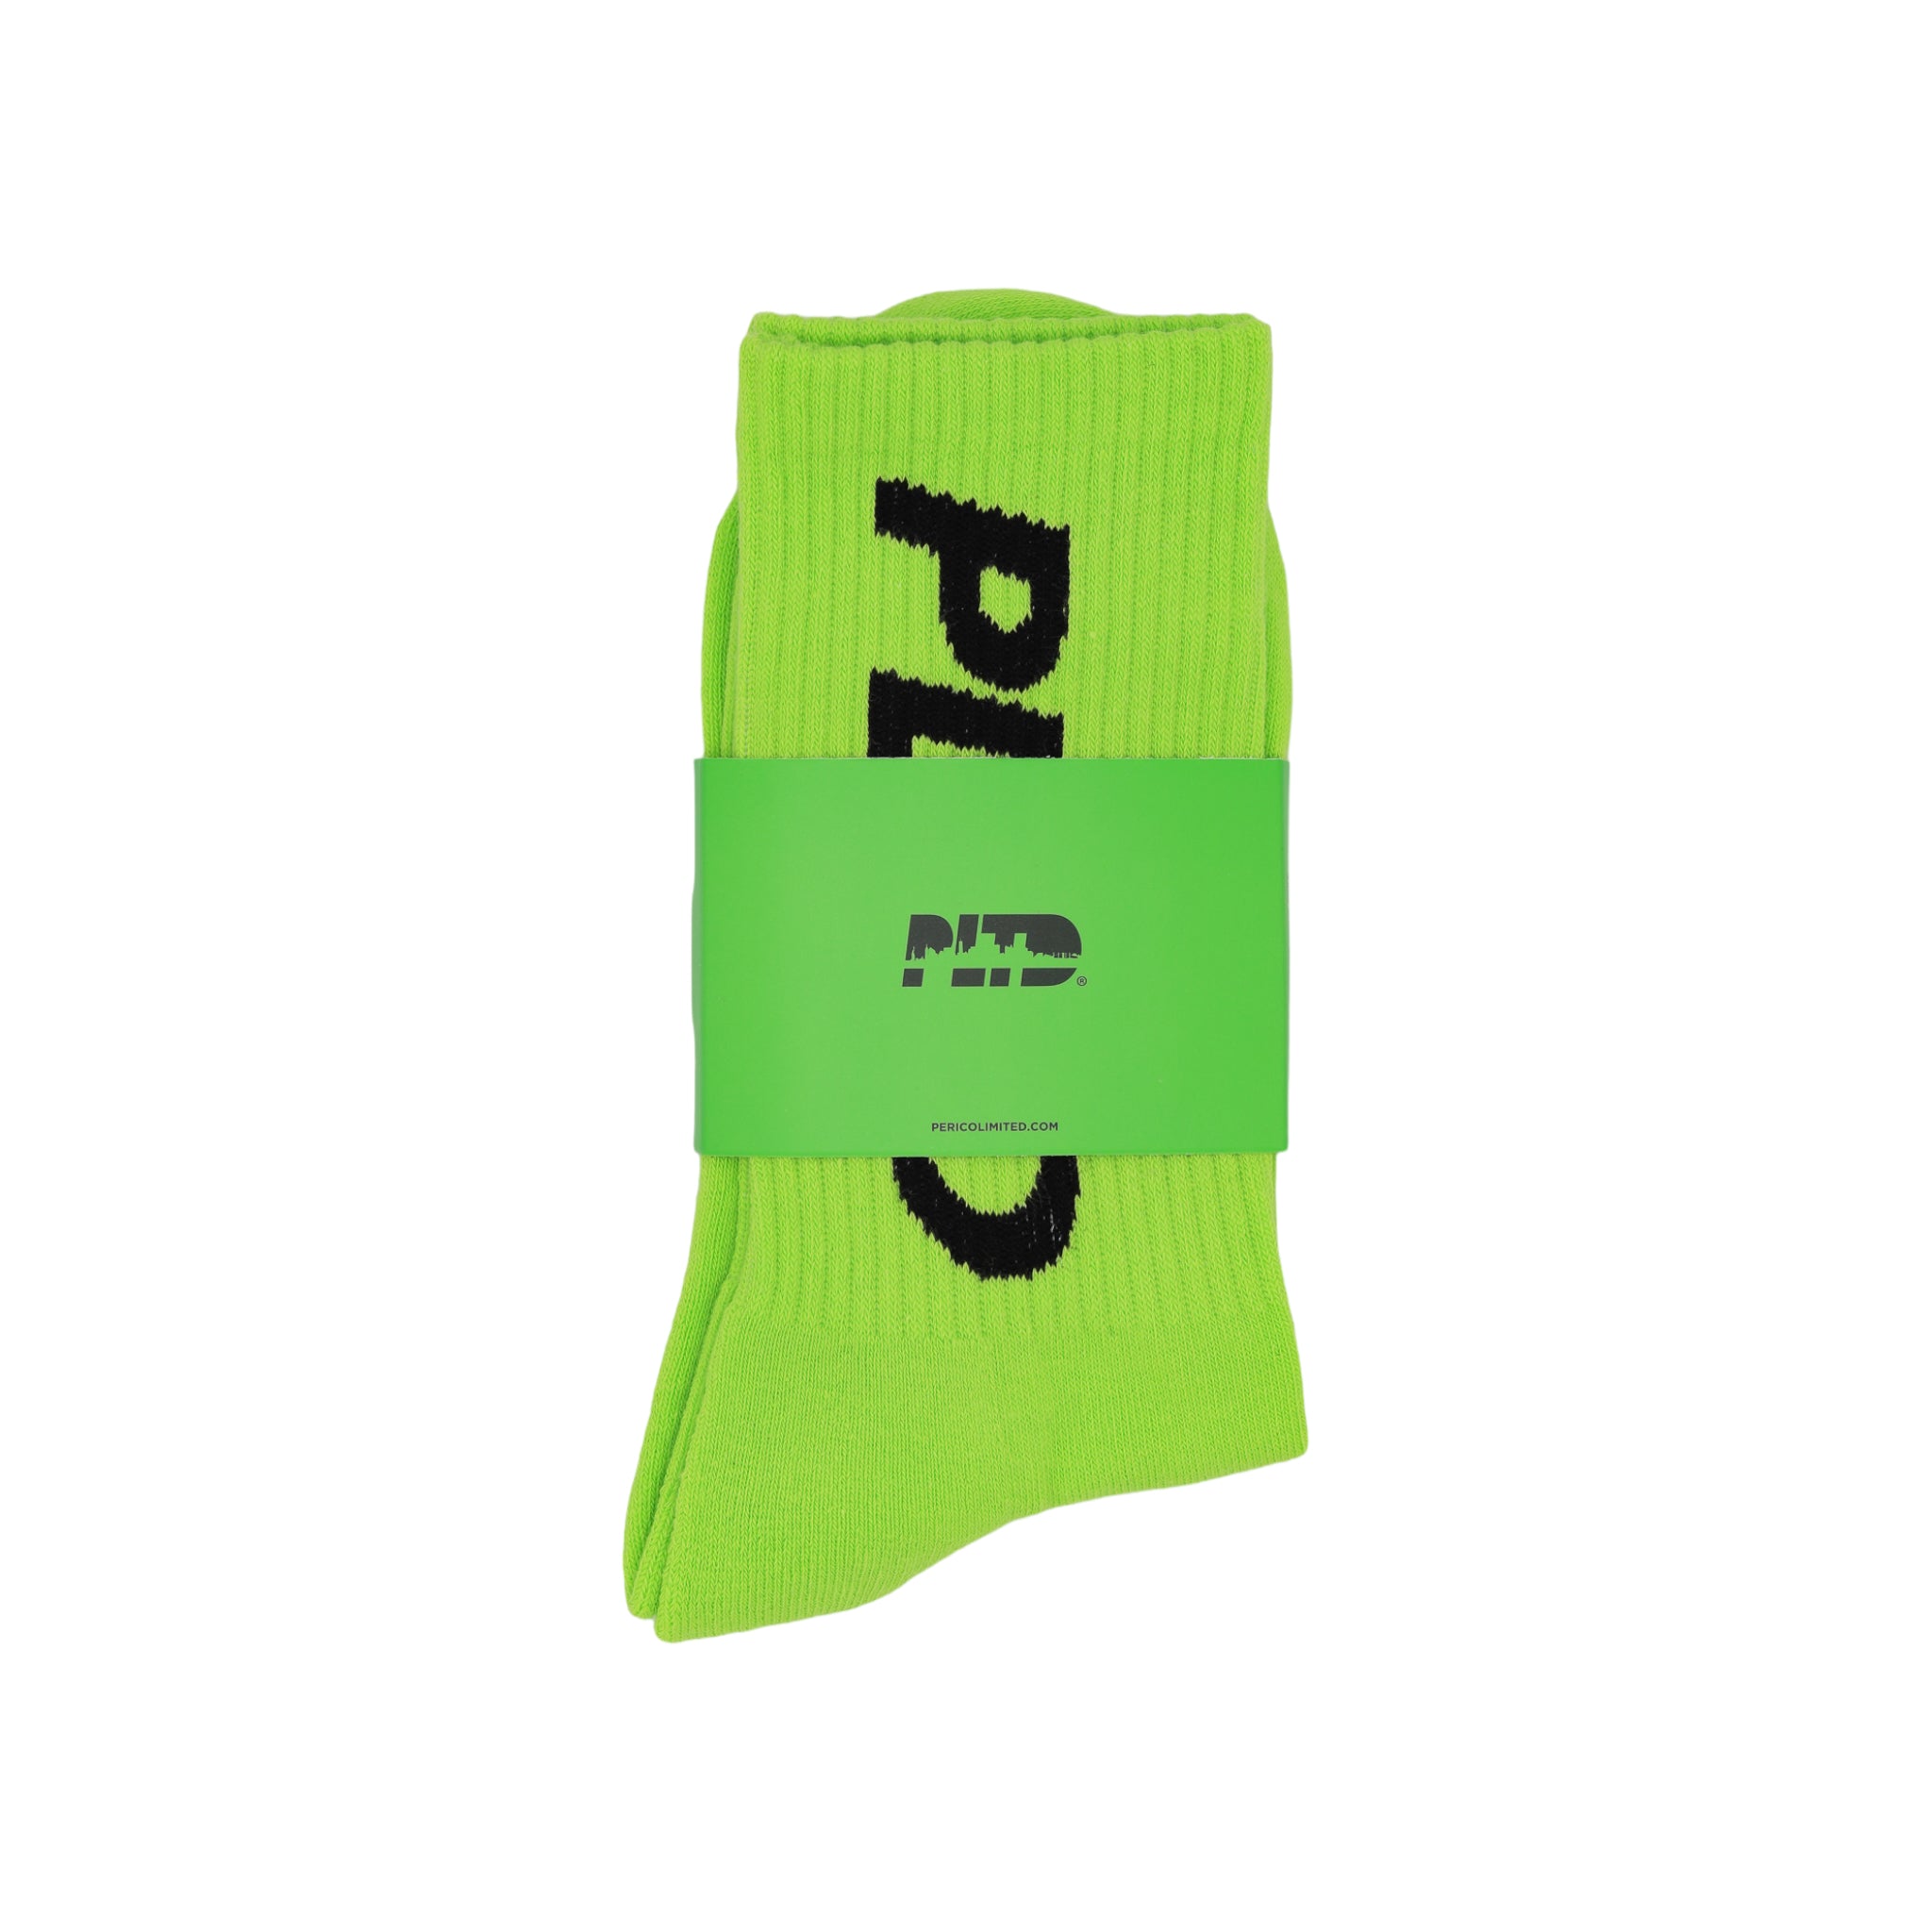 Team PLTD - Lime Socks